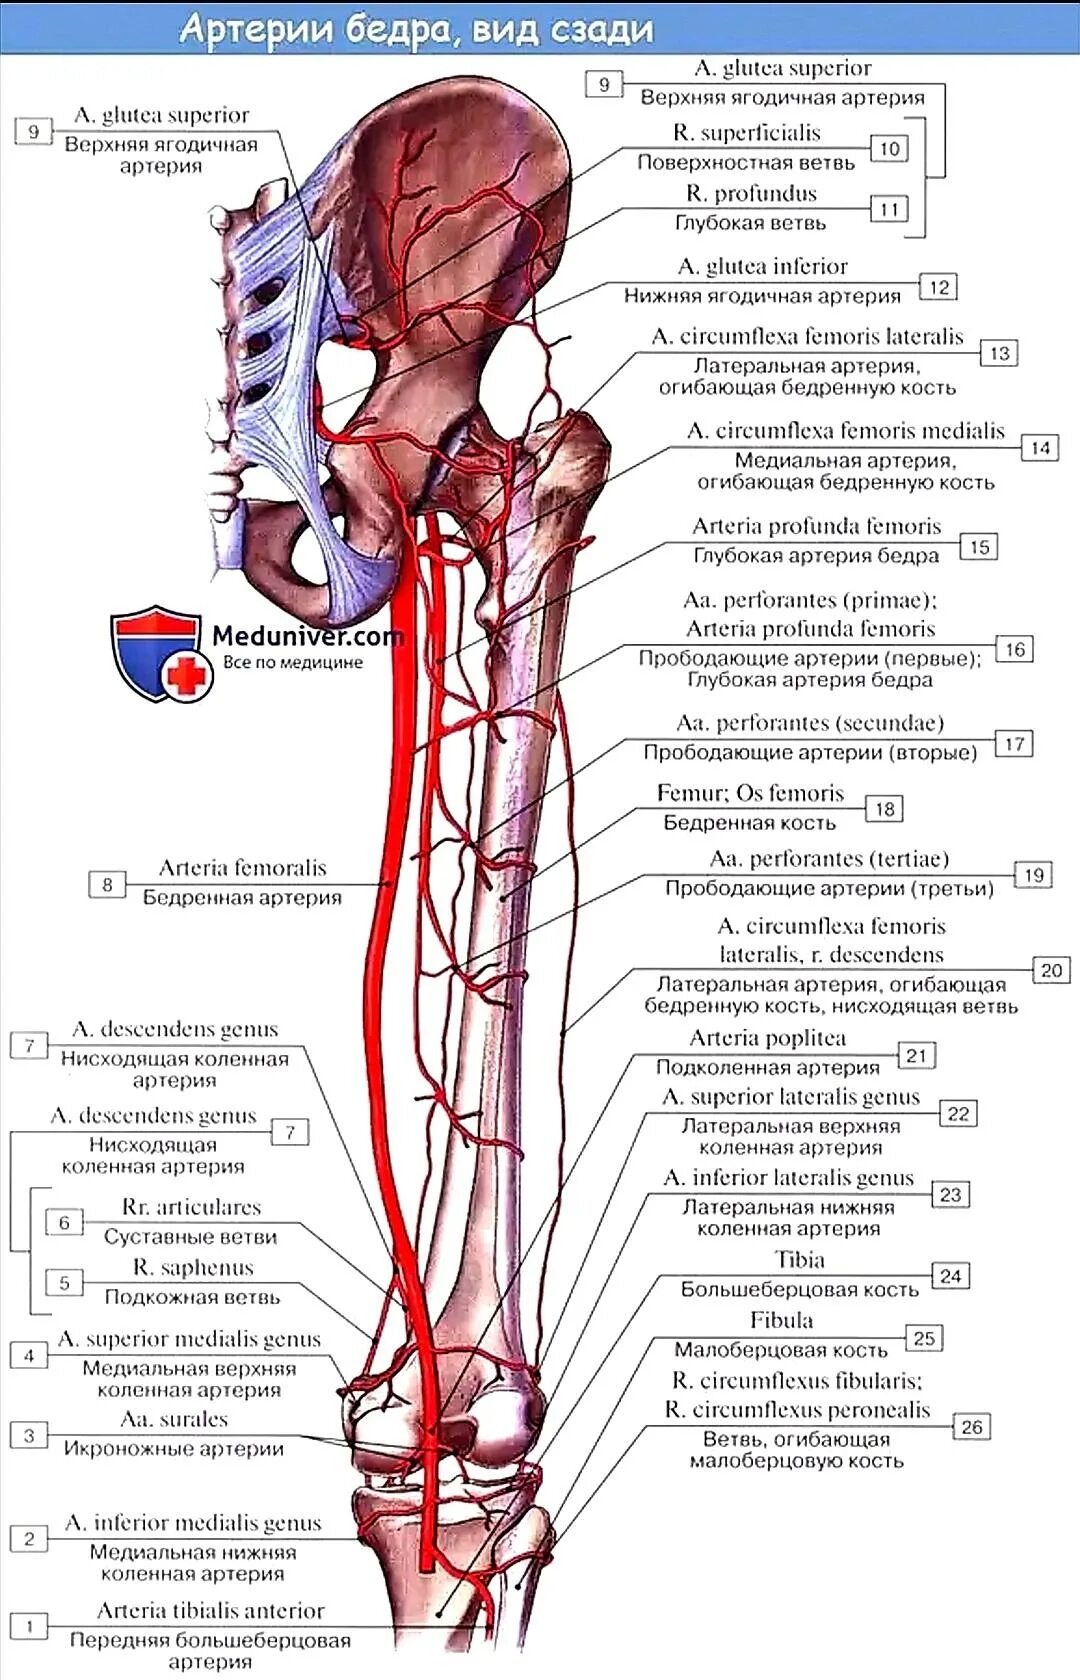 Ветви медиальной артерии огибающей бедренную кость. Артерия огибающая бедренную кость. Прободающие артерии бедра. Медиальная артерия огибающая бедренную кость. Артерии нижней конечности бедренная